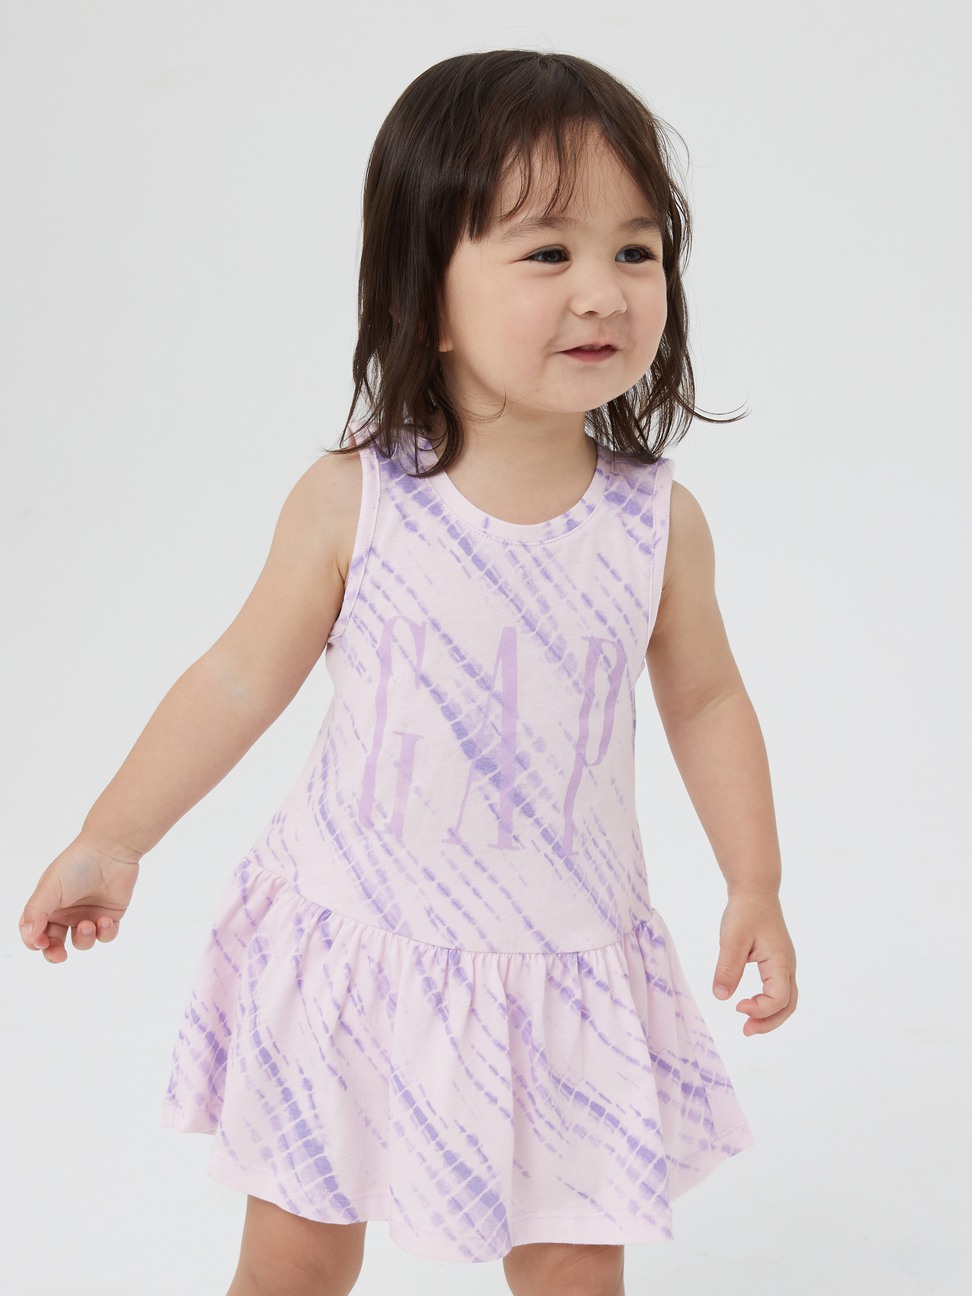 嬰兒|Logo純棉紮染背心洋裝家居套裝-淺紫色